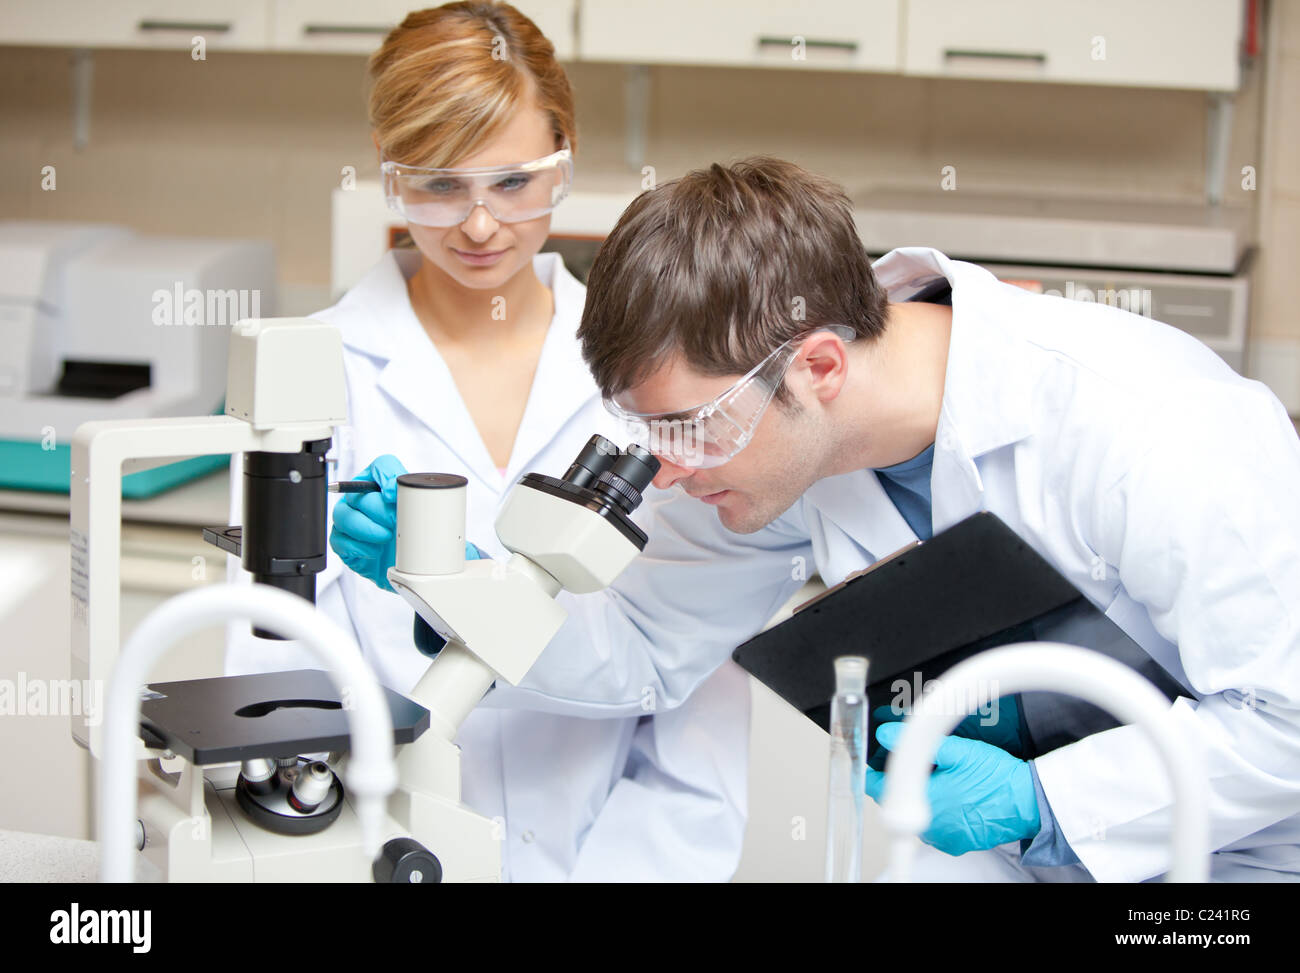 Dos científicos observando algo con un microscopio Foto de stock